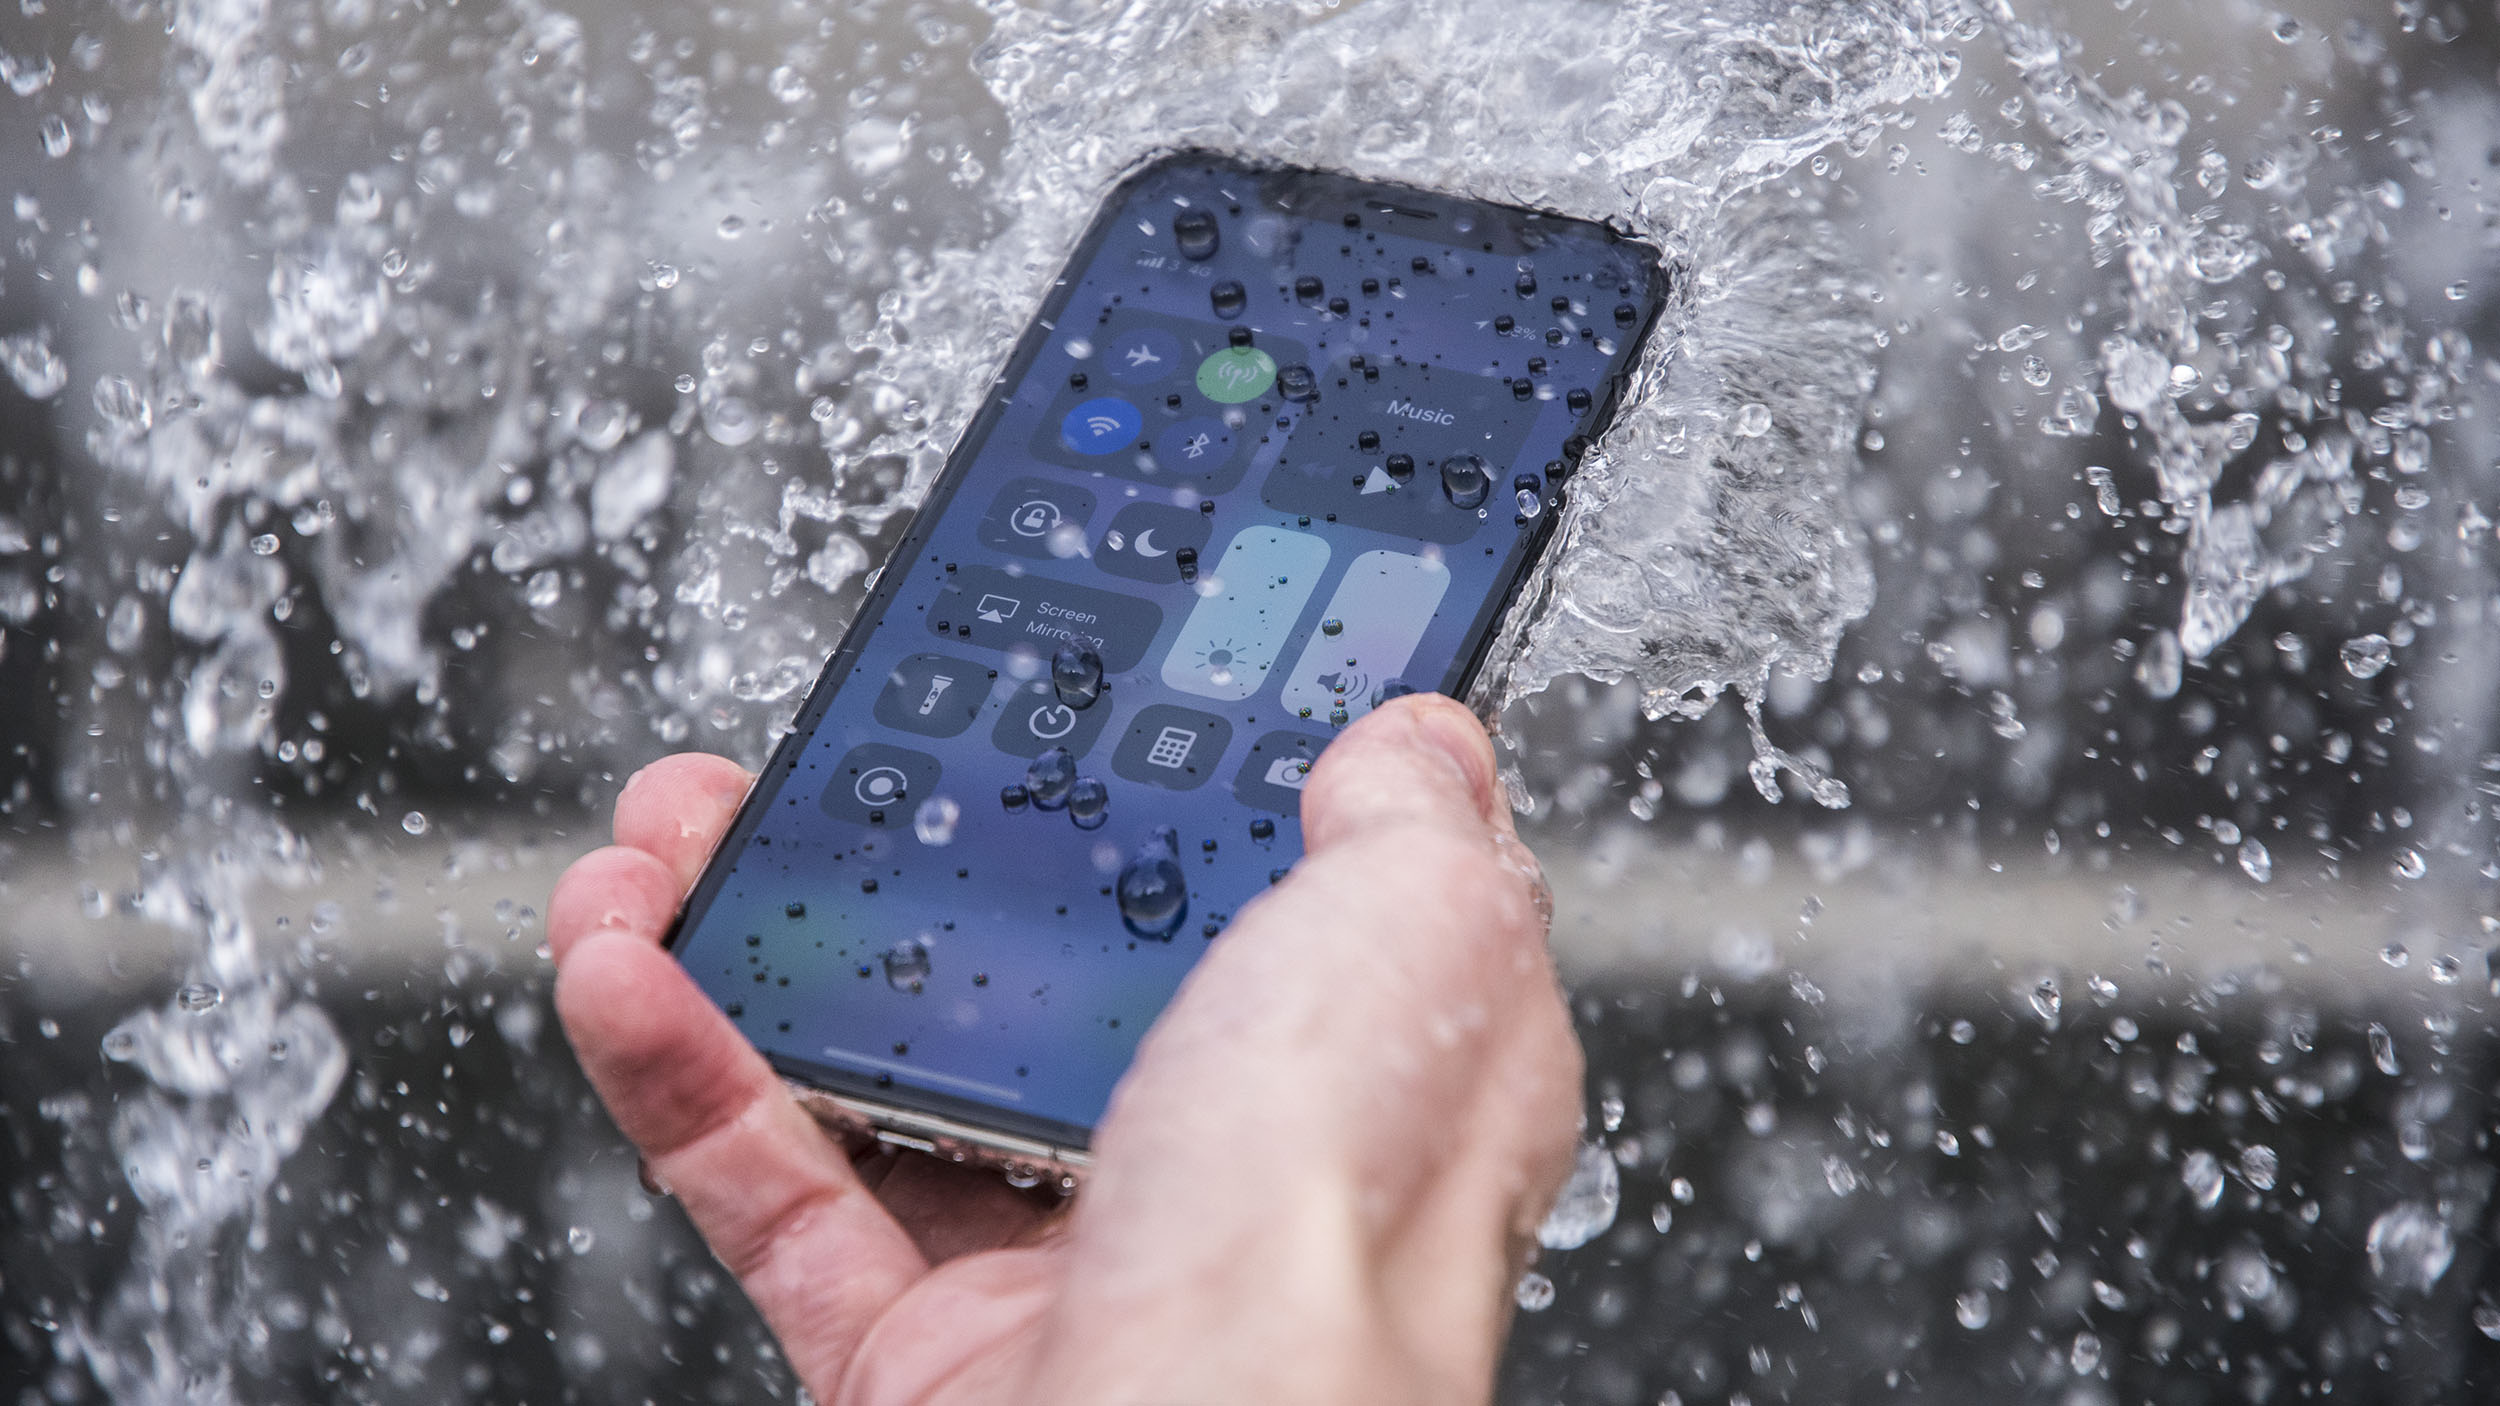  is the iPhone XR waterproof